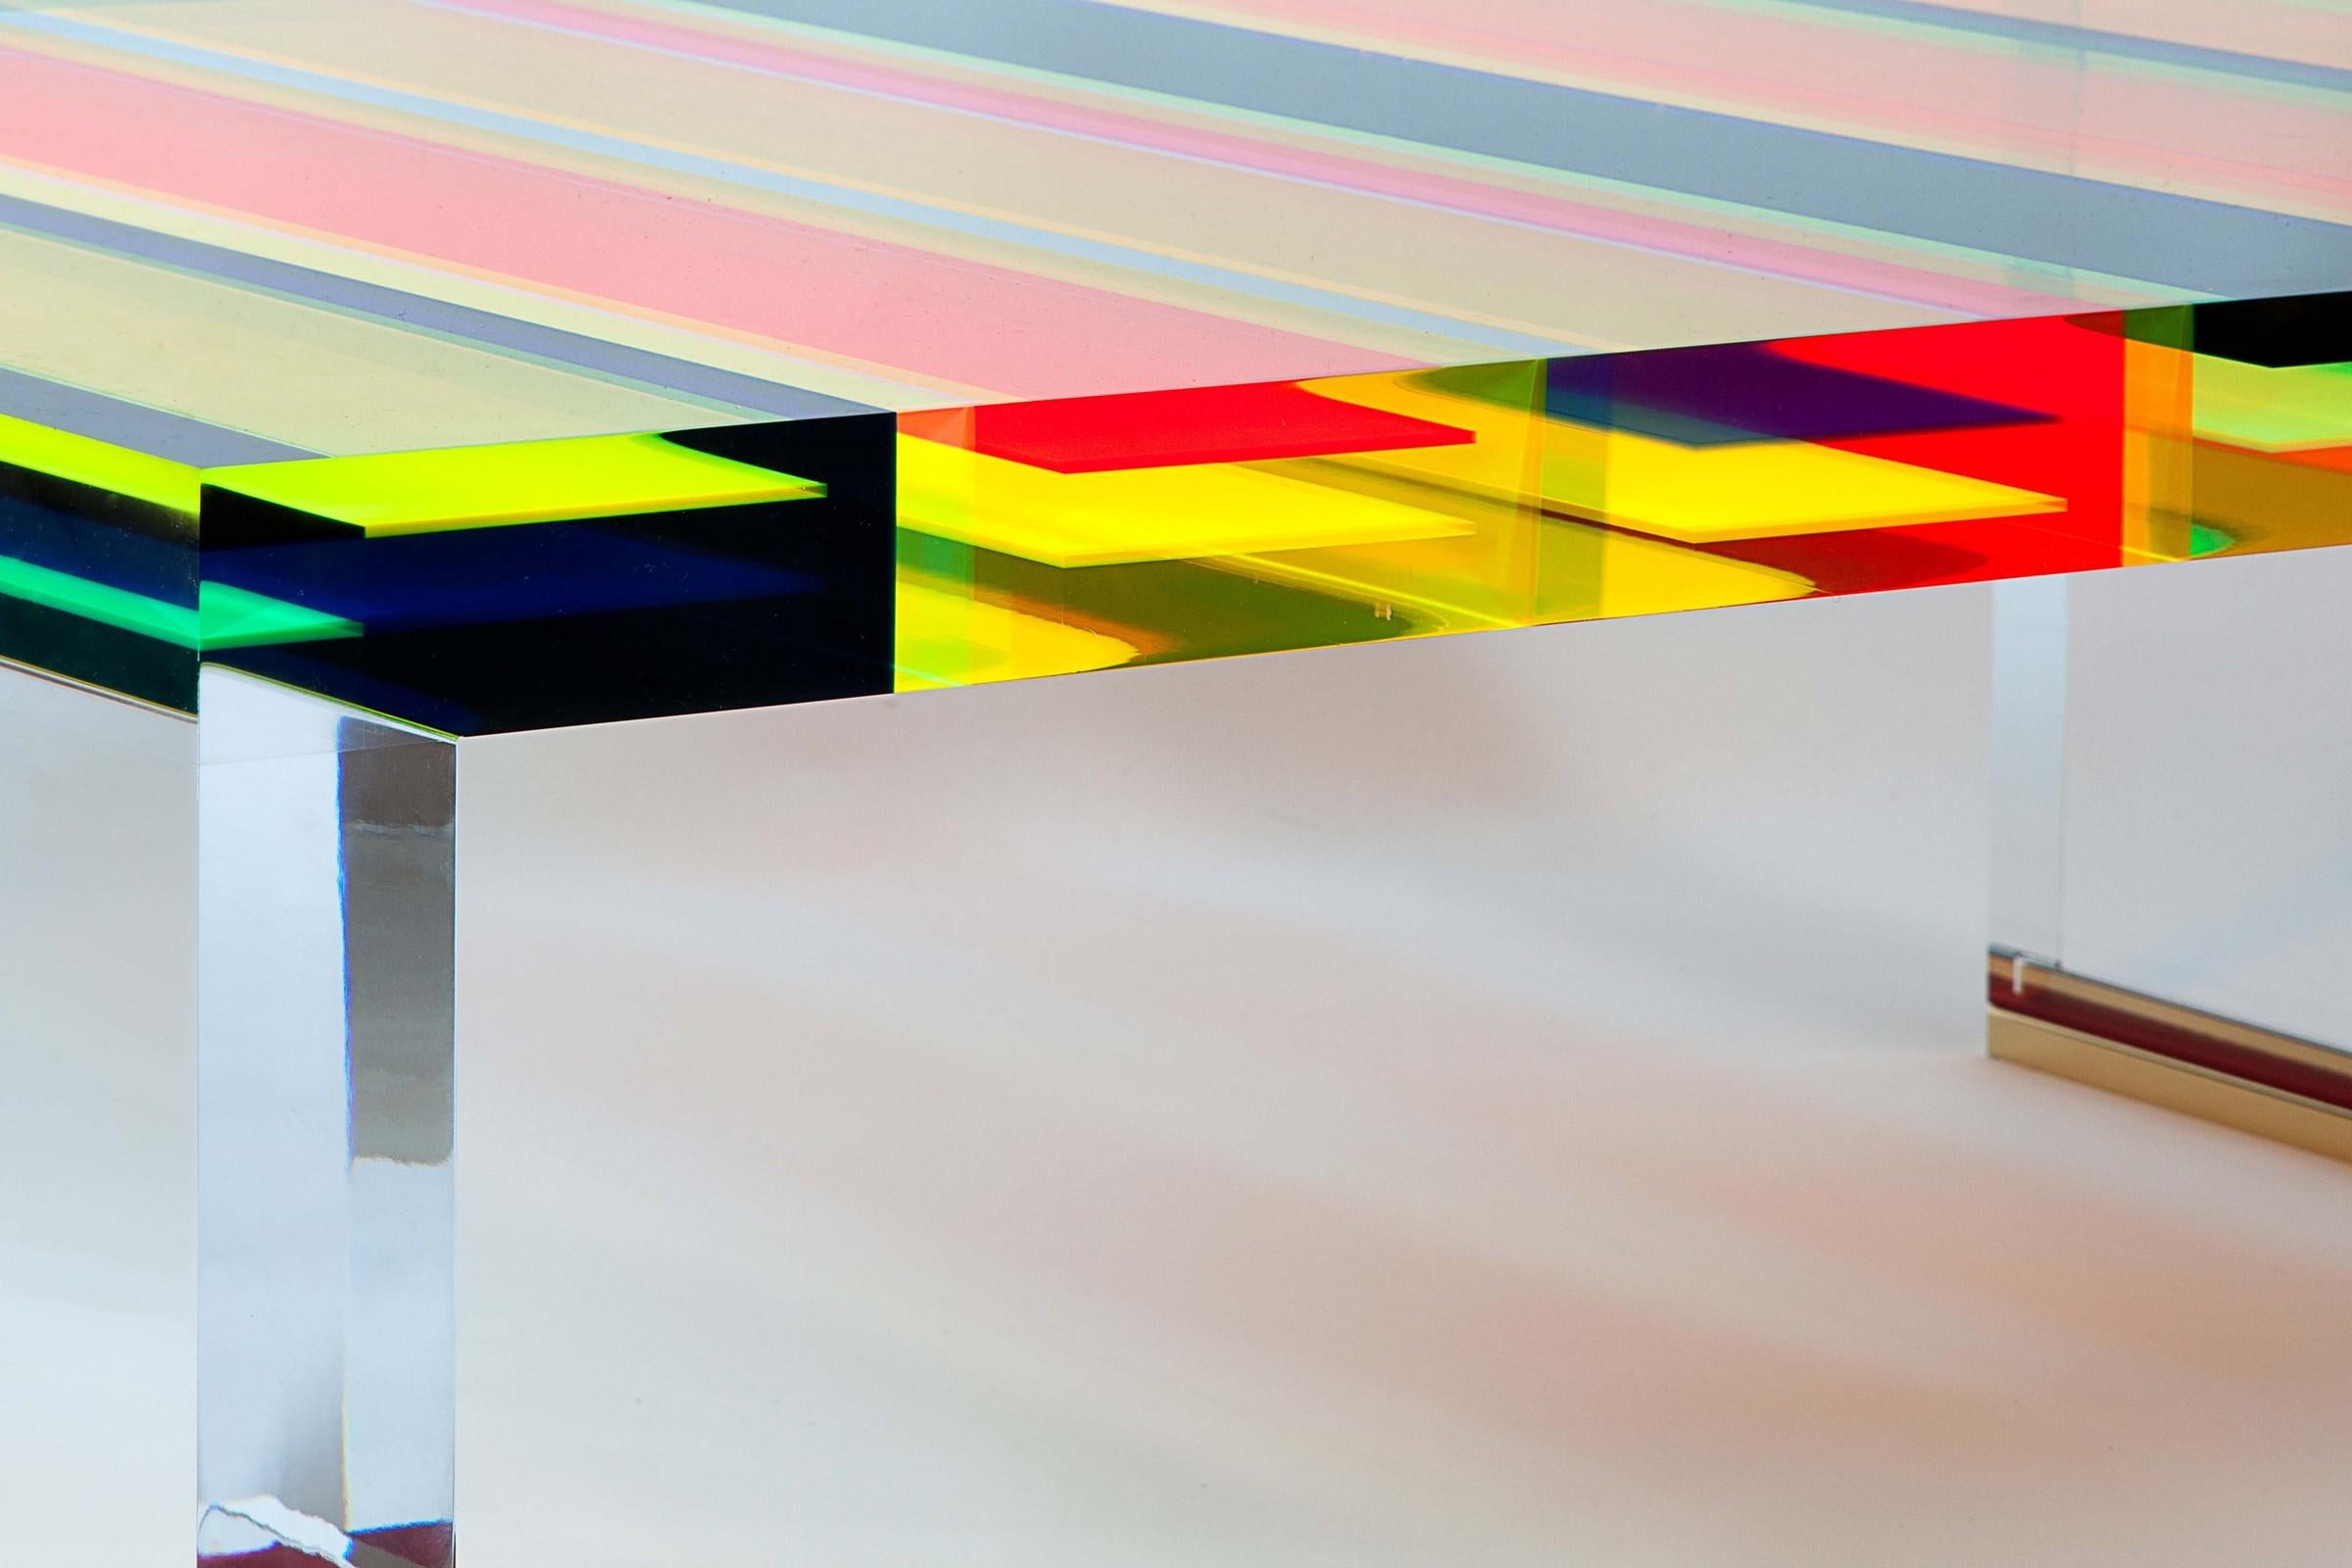 DNA Couchtisch aus transparentem und farbigem Plexiglas.
Eine Reihe von Einzelstücken, die von Studio Superego für Superego Editions entworfen wurden.
 
Biografie
Superego editions wurde 2006 gegründet und führt eine konstante Forschungstätigkeit im